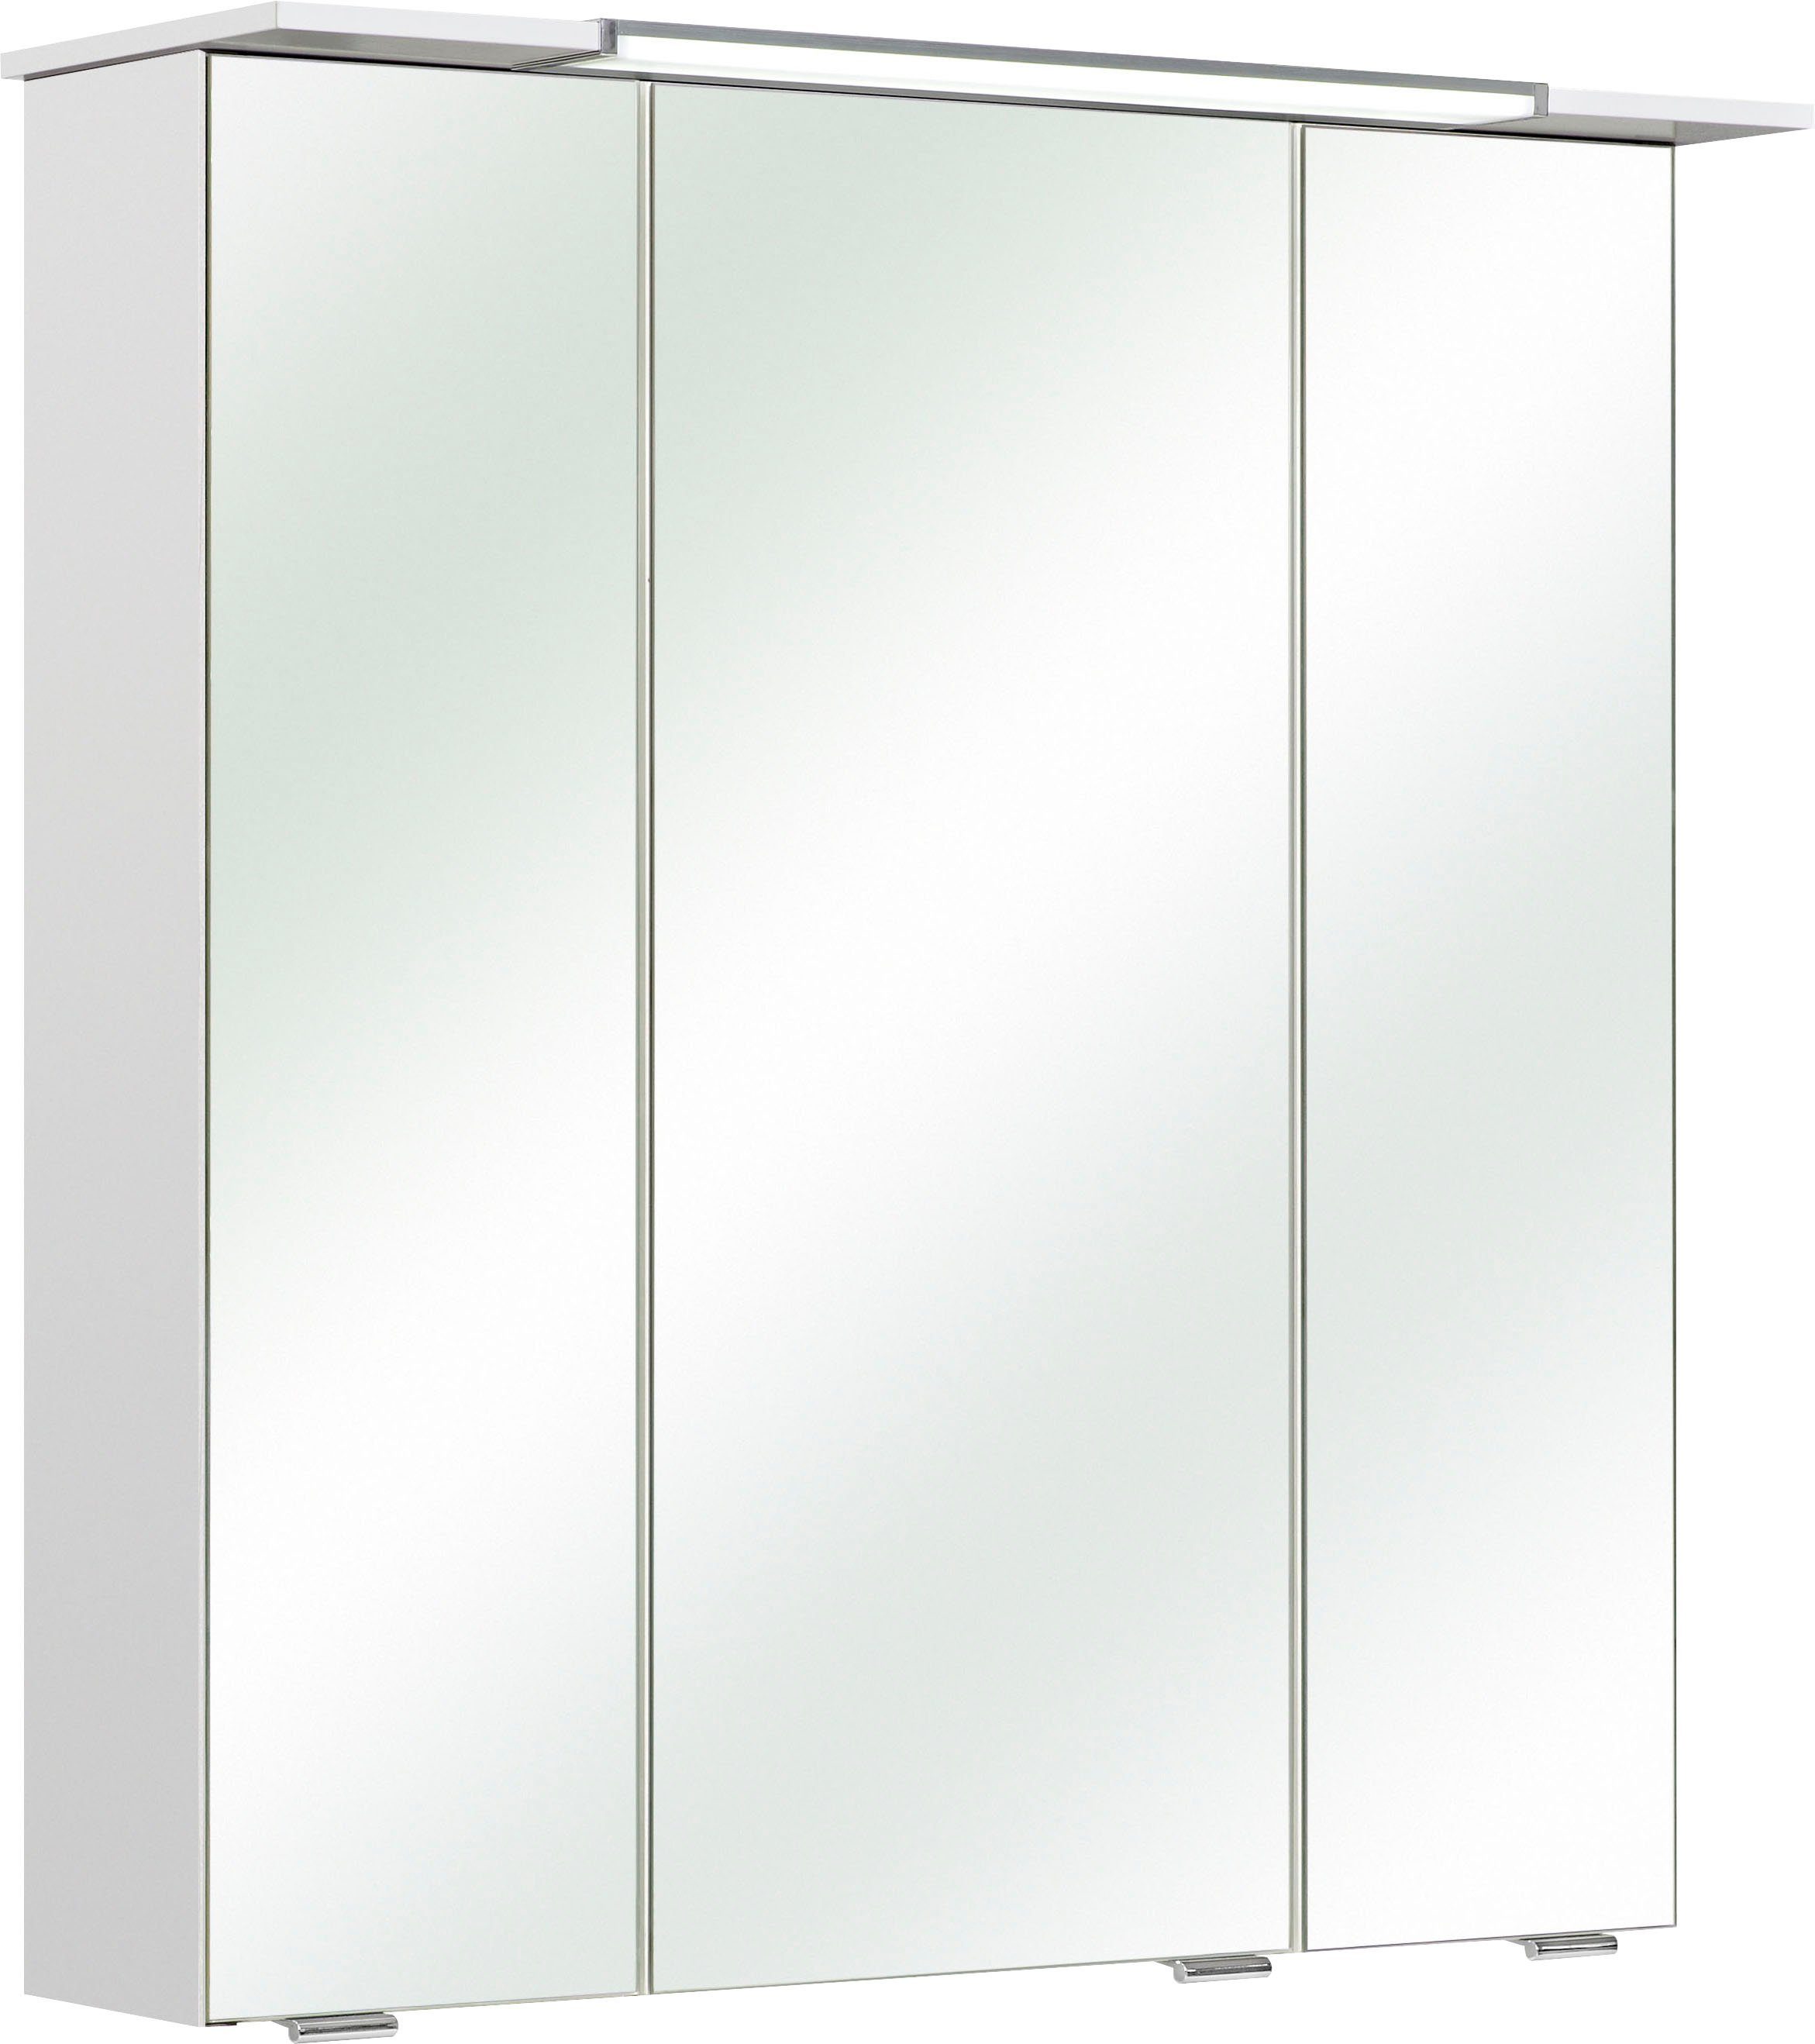 PELIPAL Spiegelschrank Quickset 376 Breite 67cm | Spiegelschränke